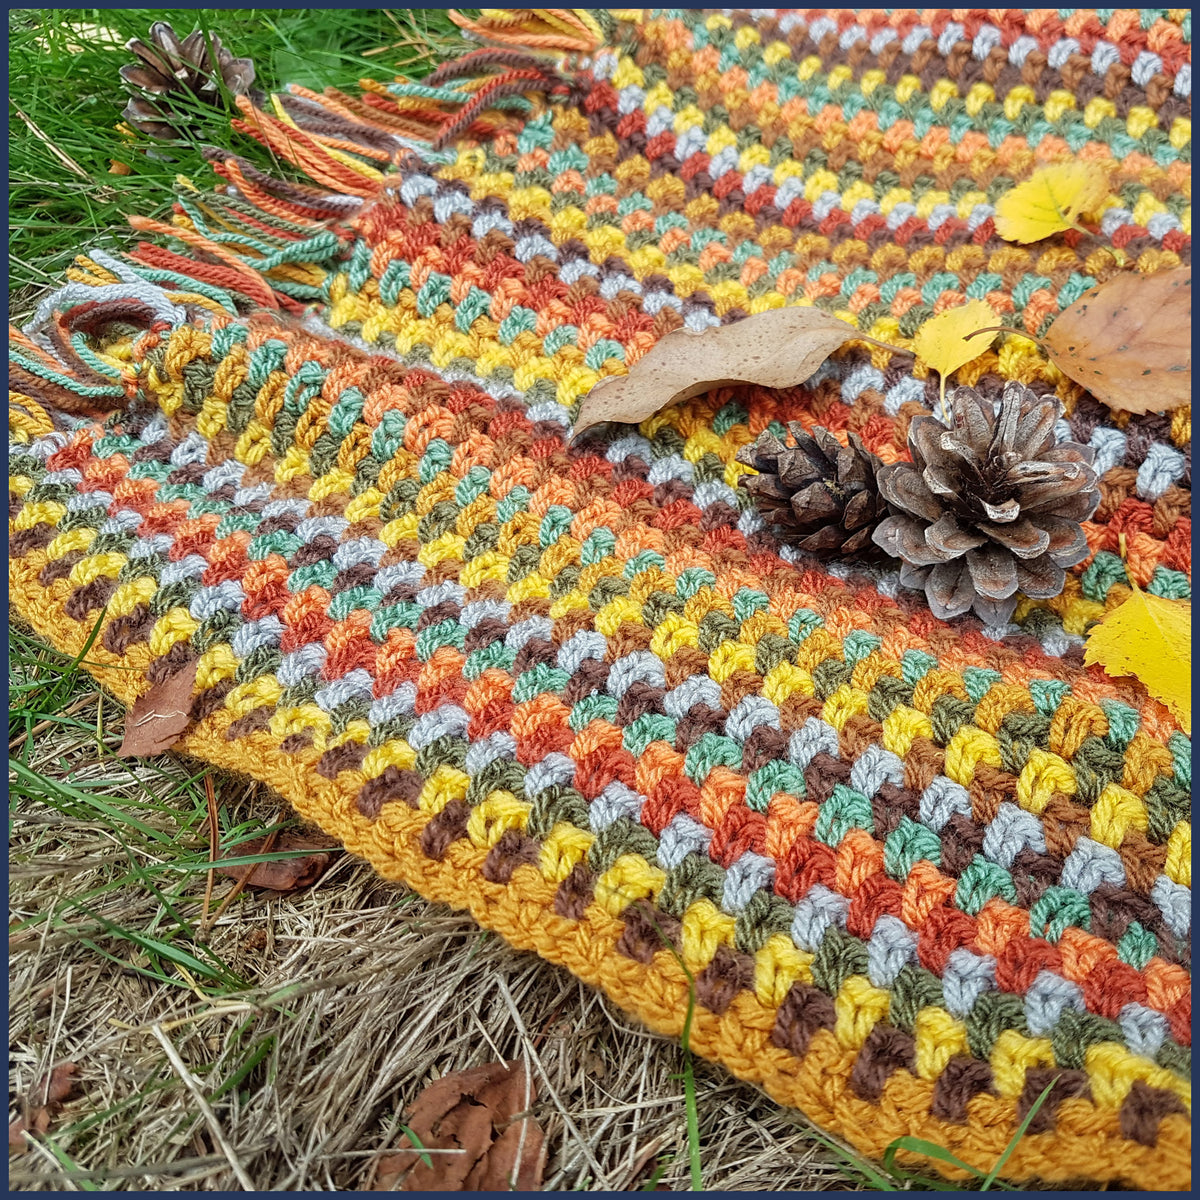 Family Tree Crochet Blanket Kit